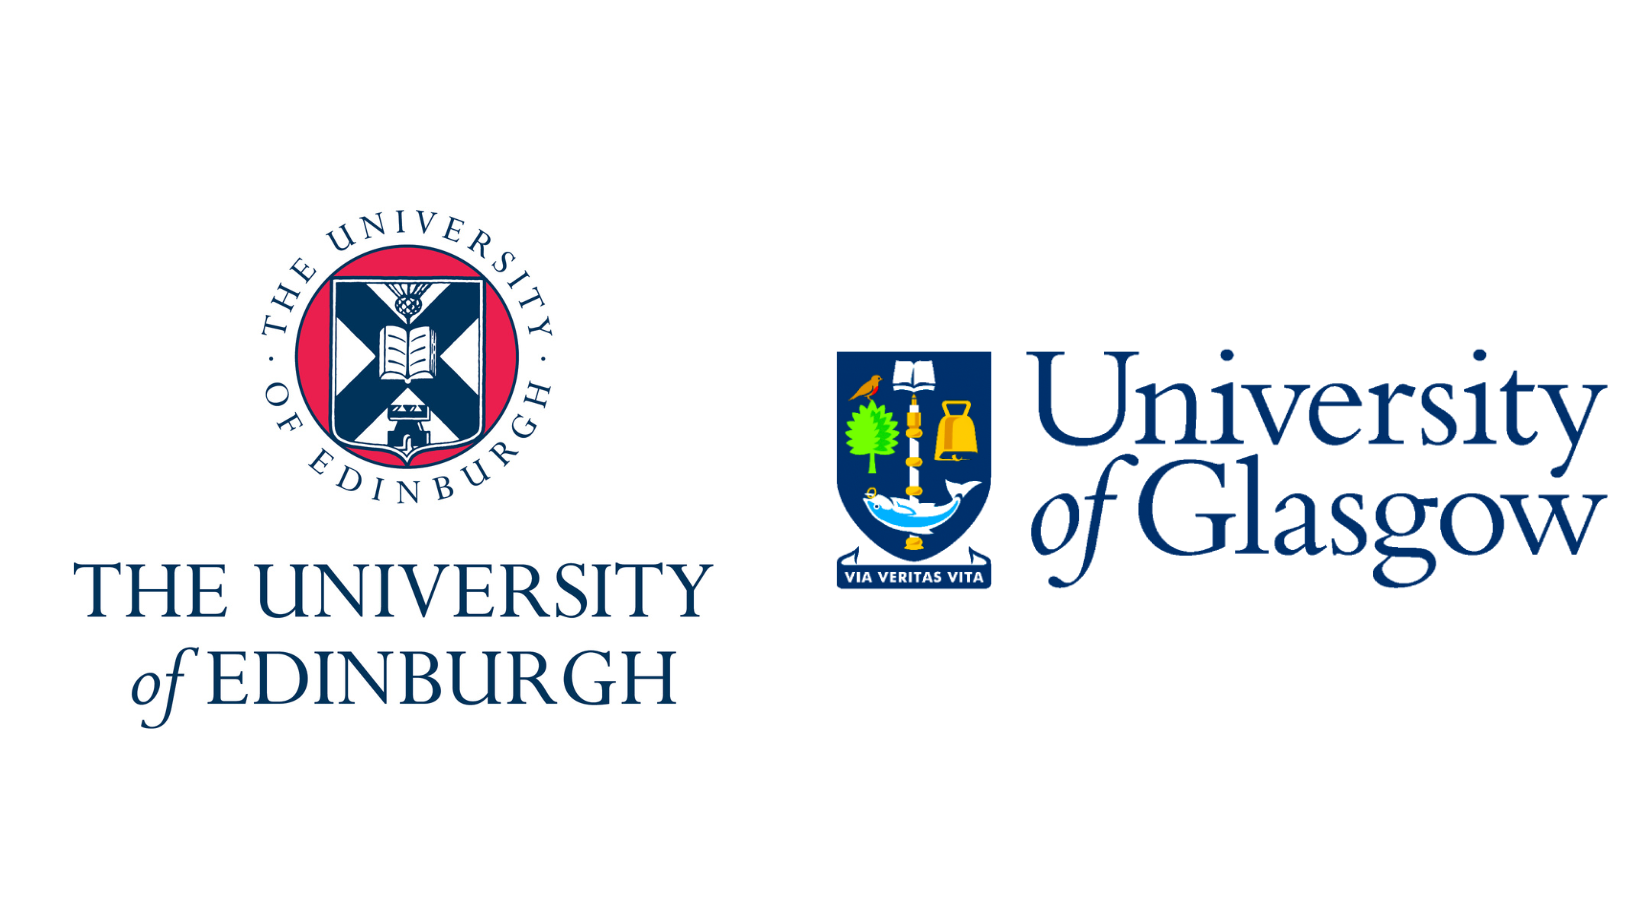 University of Glasgow & University of Edinburgh